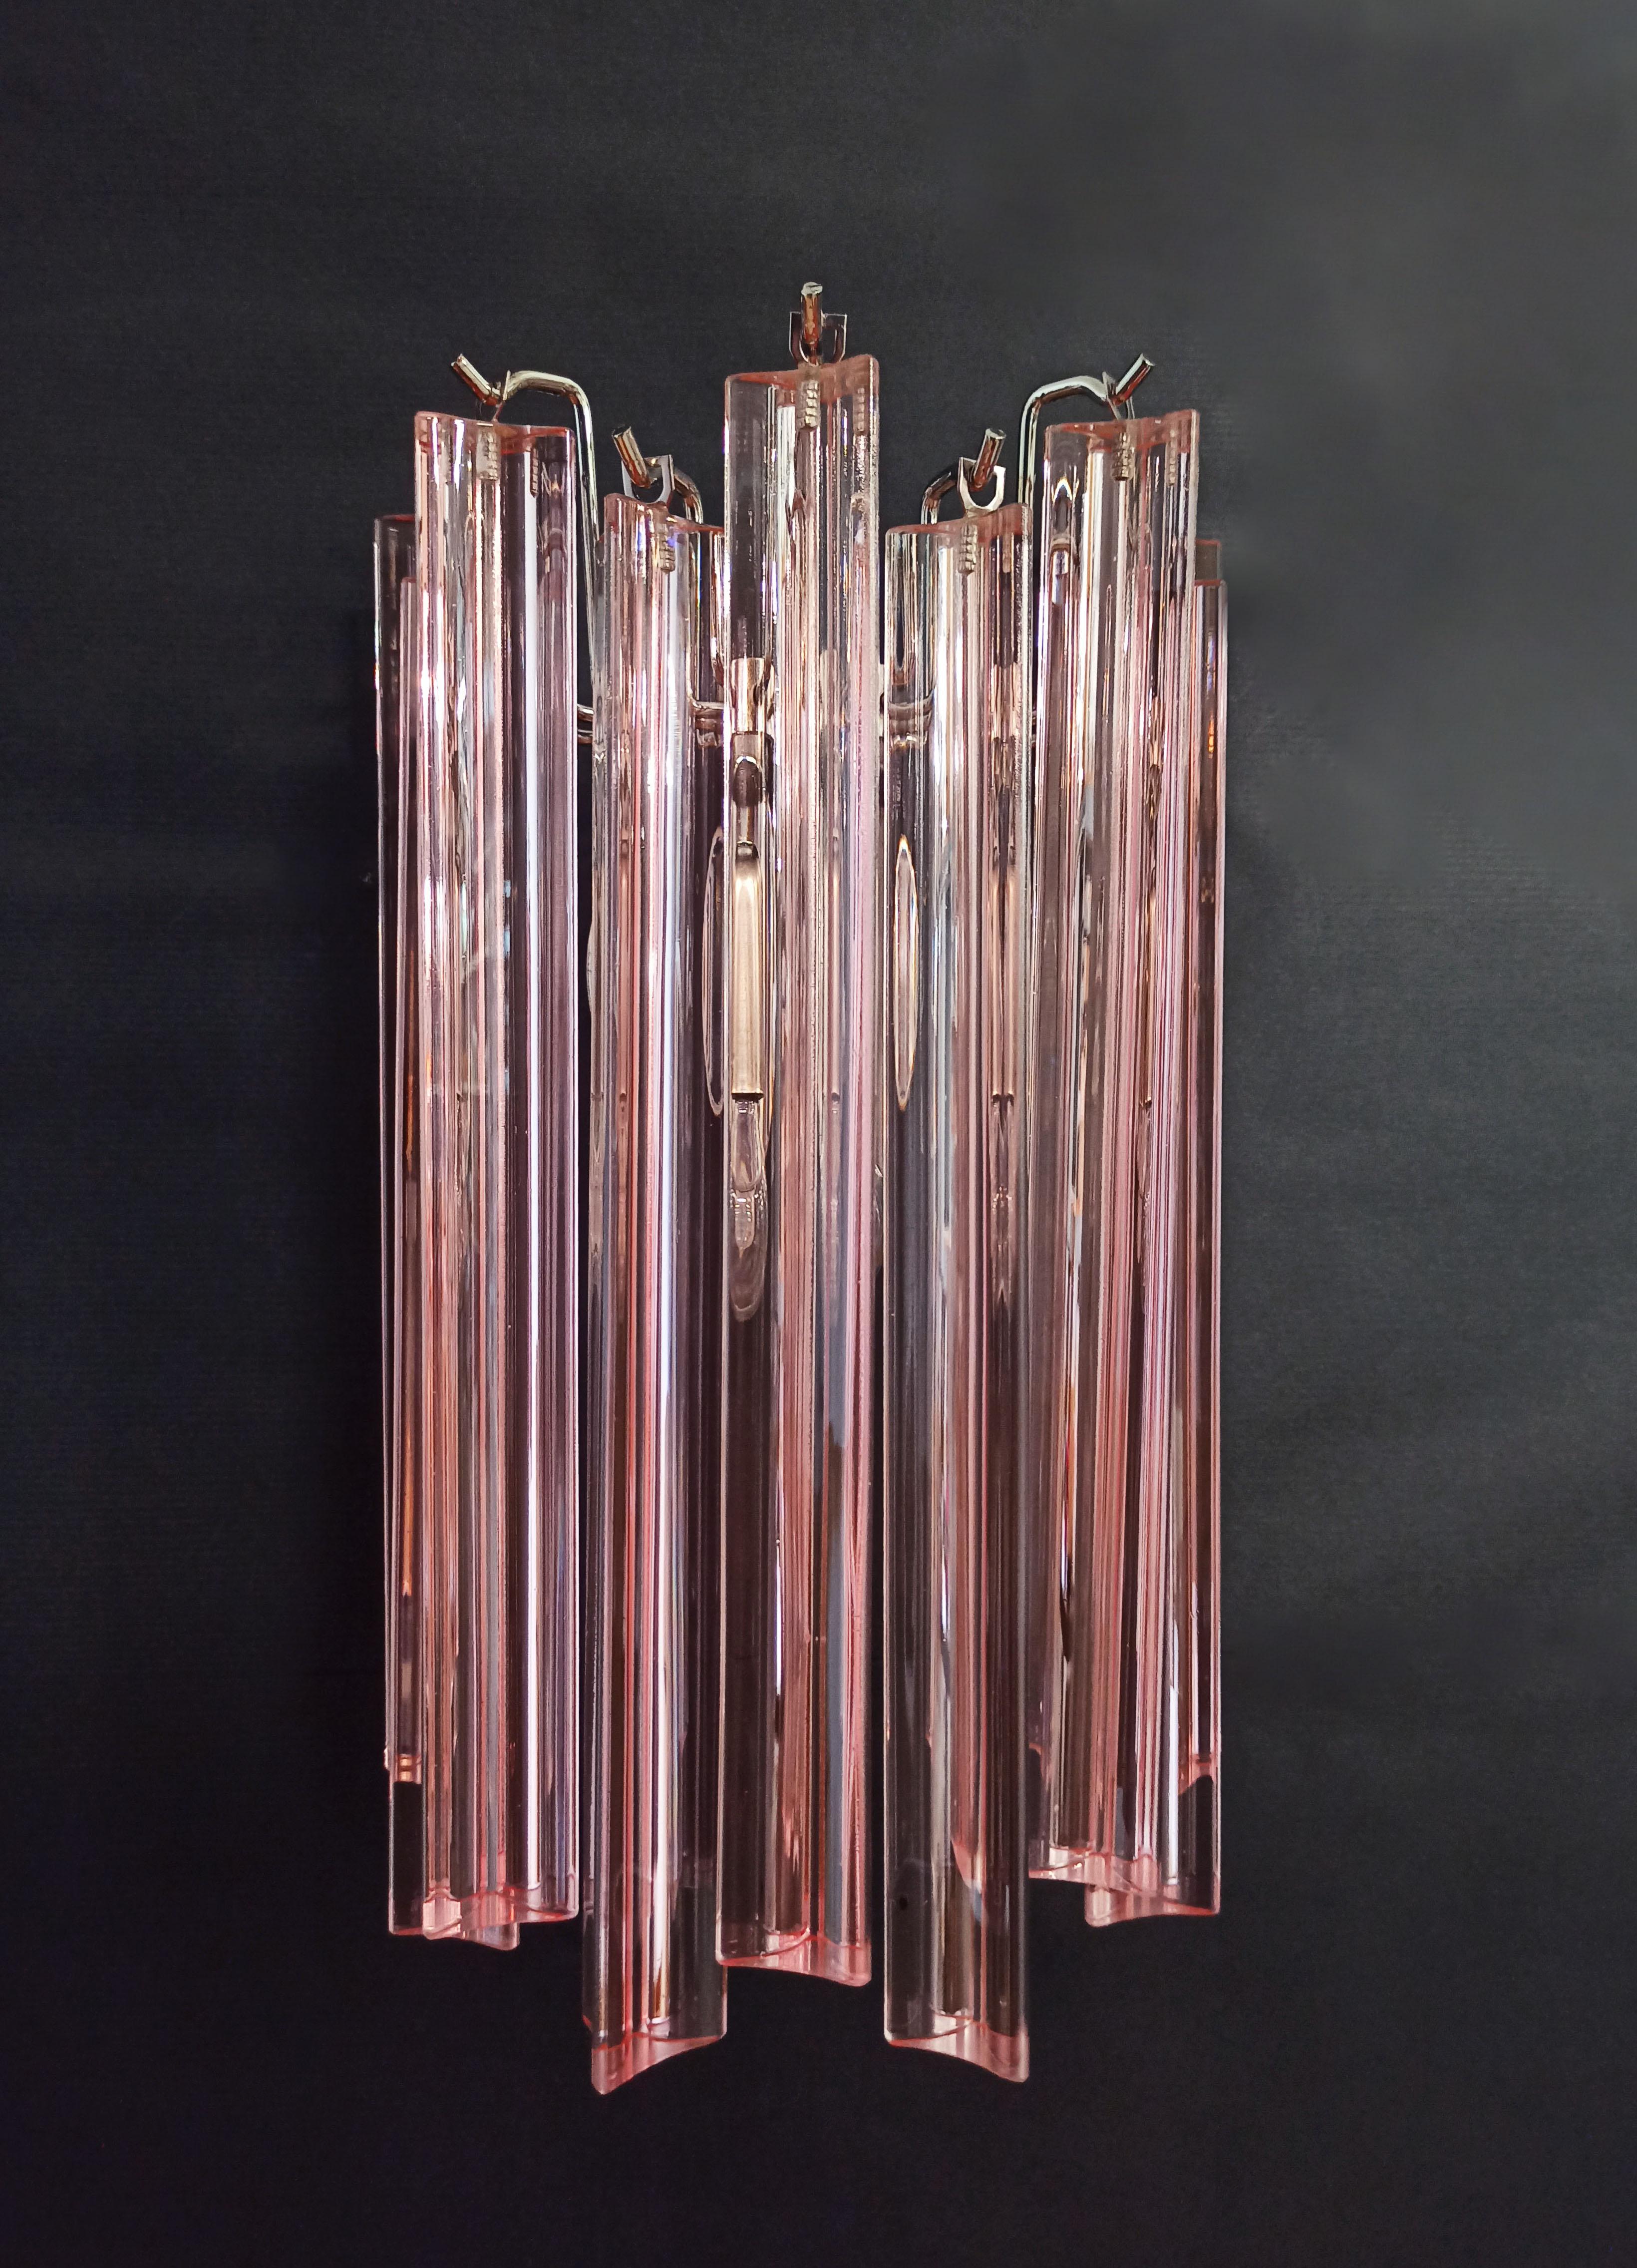 Fantastisches Paar von Vintage Murano Wandleuchte von 9 Murano rosa Kristall Prisma (versuchtri) für jede Applique gemacht  in einem verchromten Metallrahmen.
Zeitraum: Ende des XX. Jahrhunderts
Abmessungen: 12,40 Zoll Höhe (32 cm); 7,8 Zoll Breite